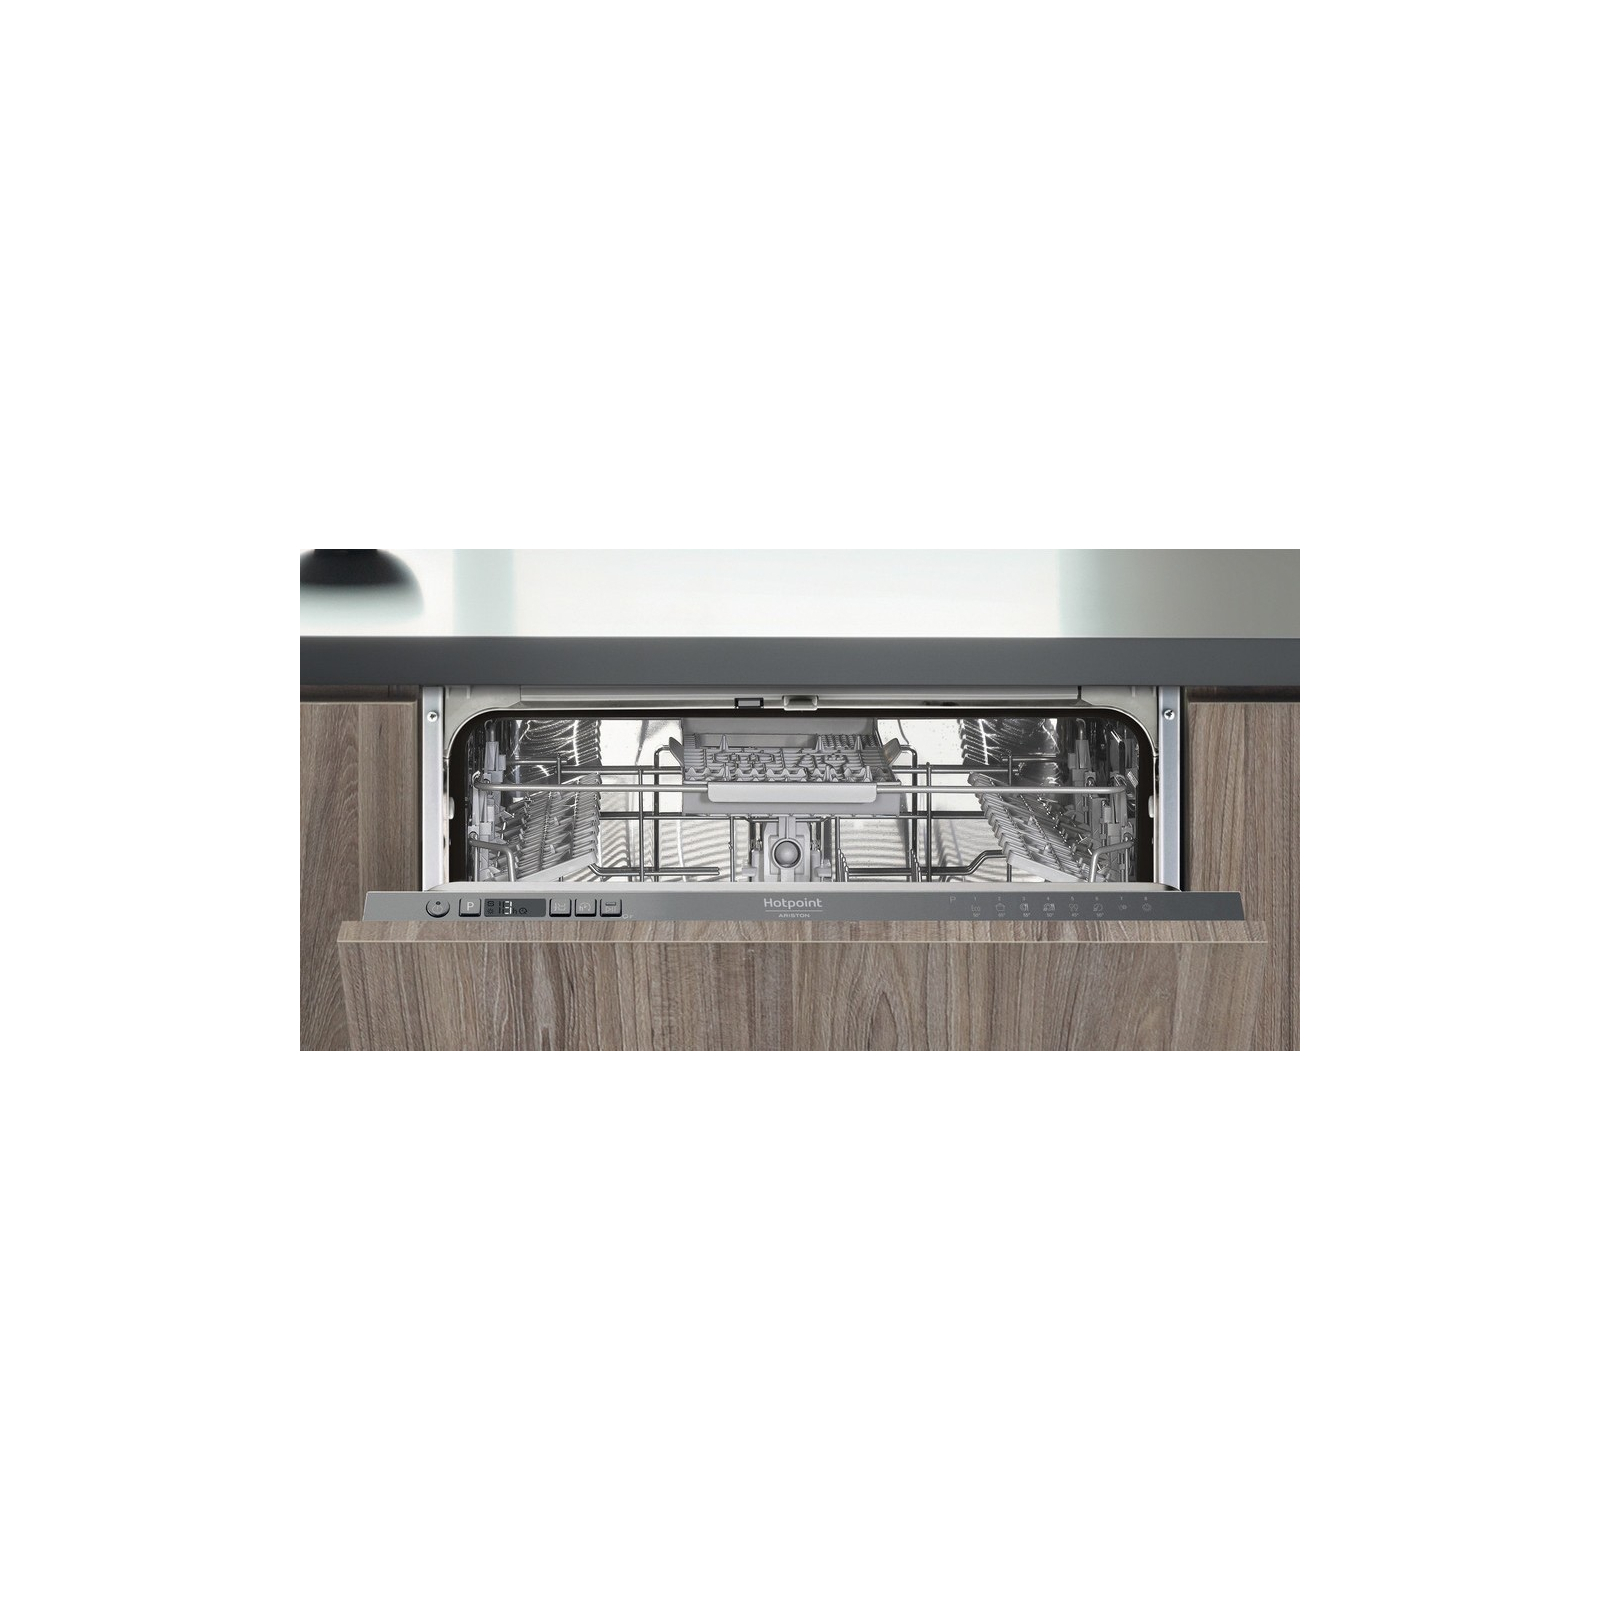 Посудомоечная машина Hotpoint-Ariston HI5010C изображение 3